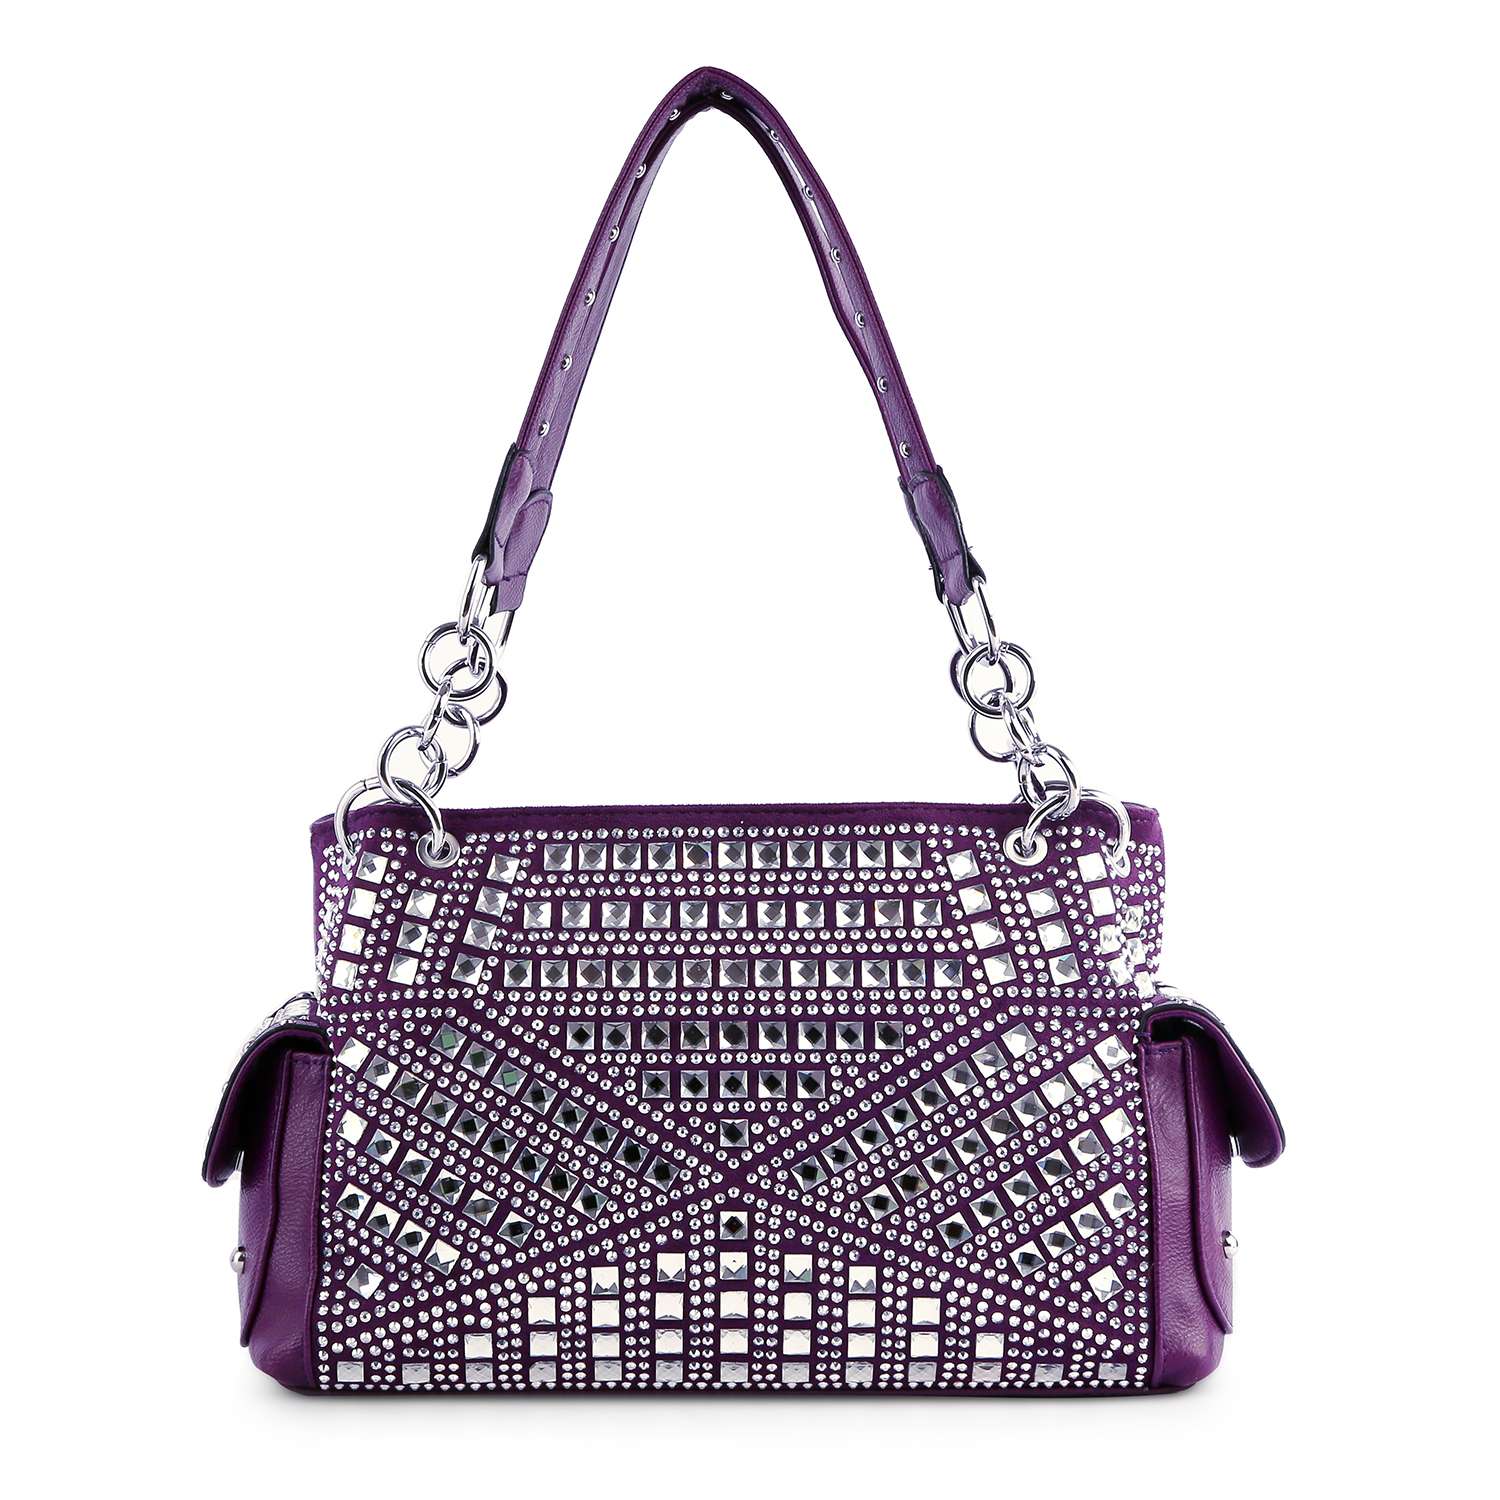 Rhinestone Covered Fashion Handbag - Purple